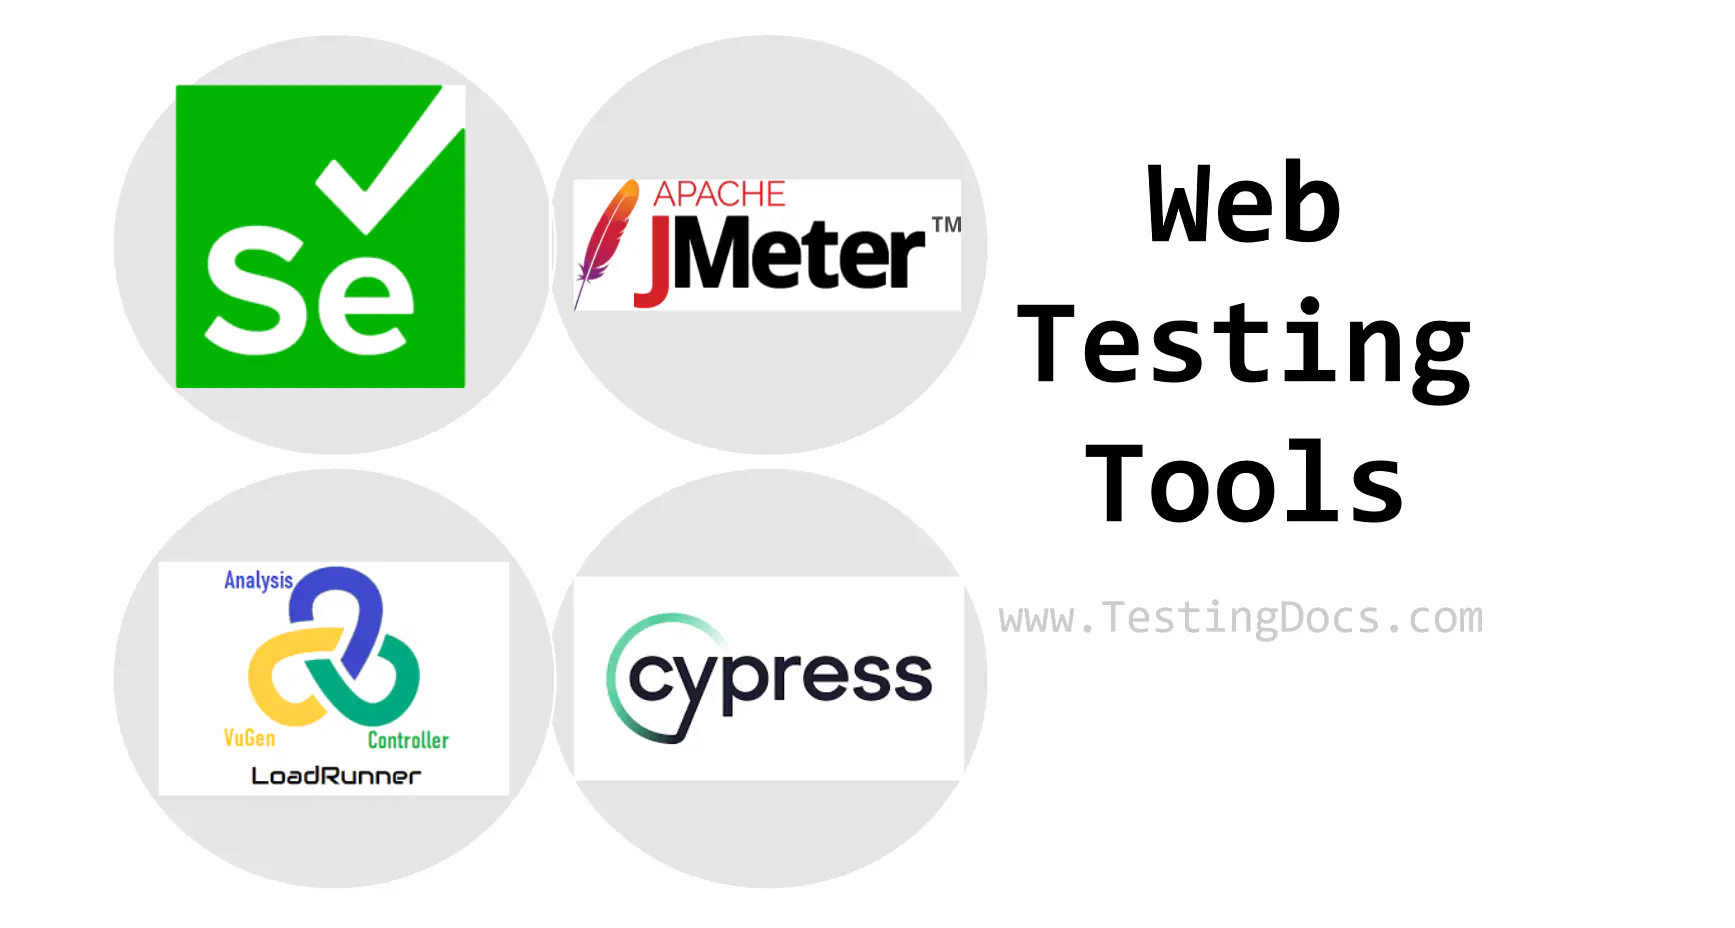 Web Testing Tools